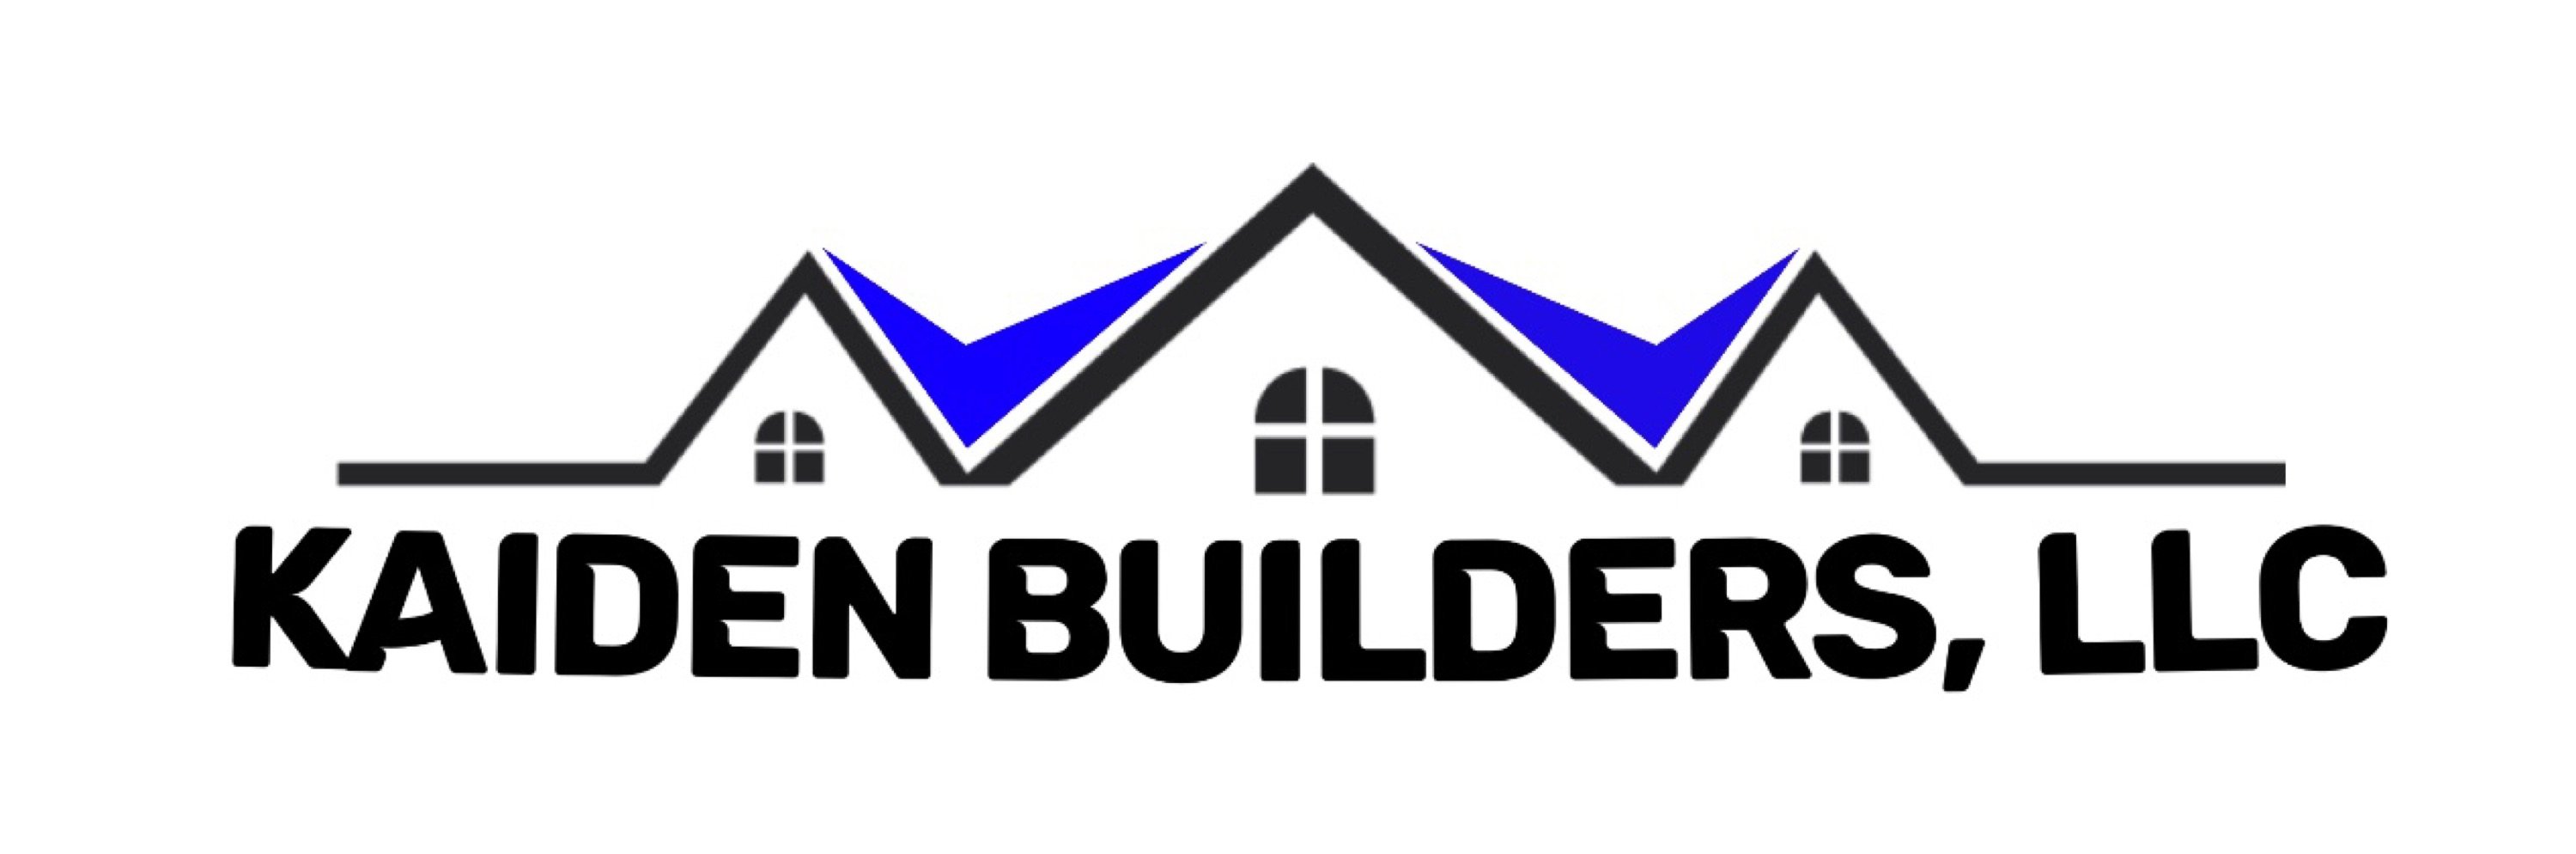 Kaiden Builders, LLC Logo